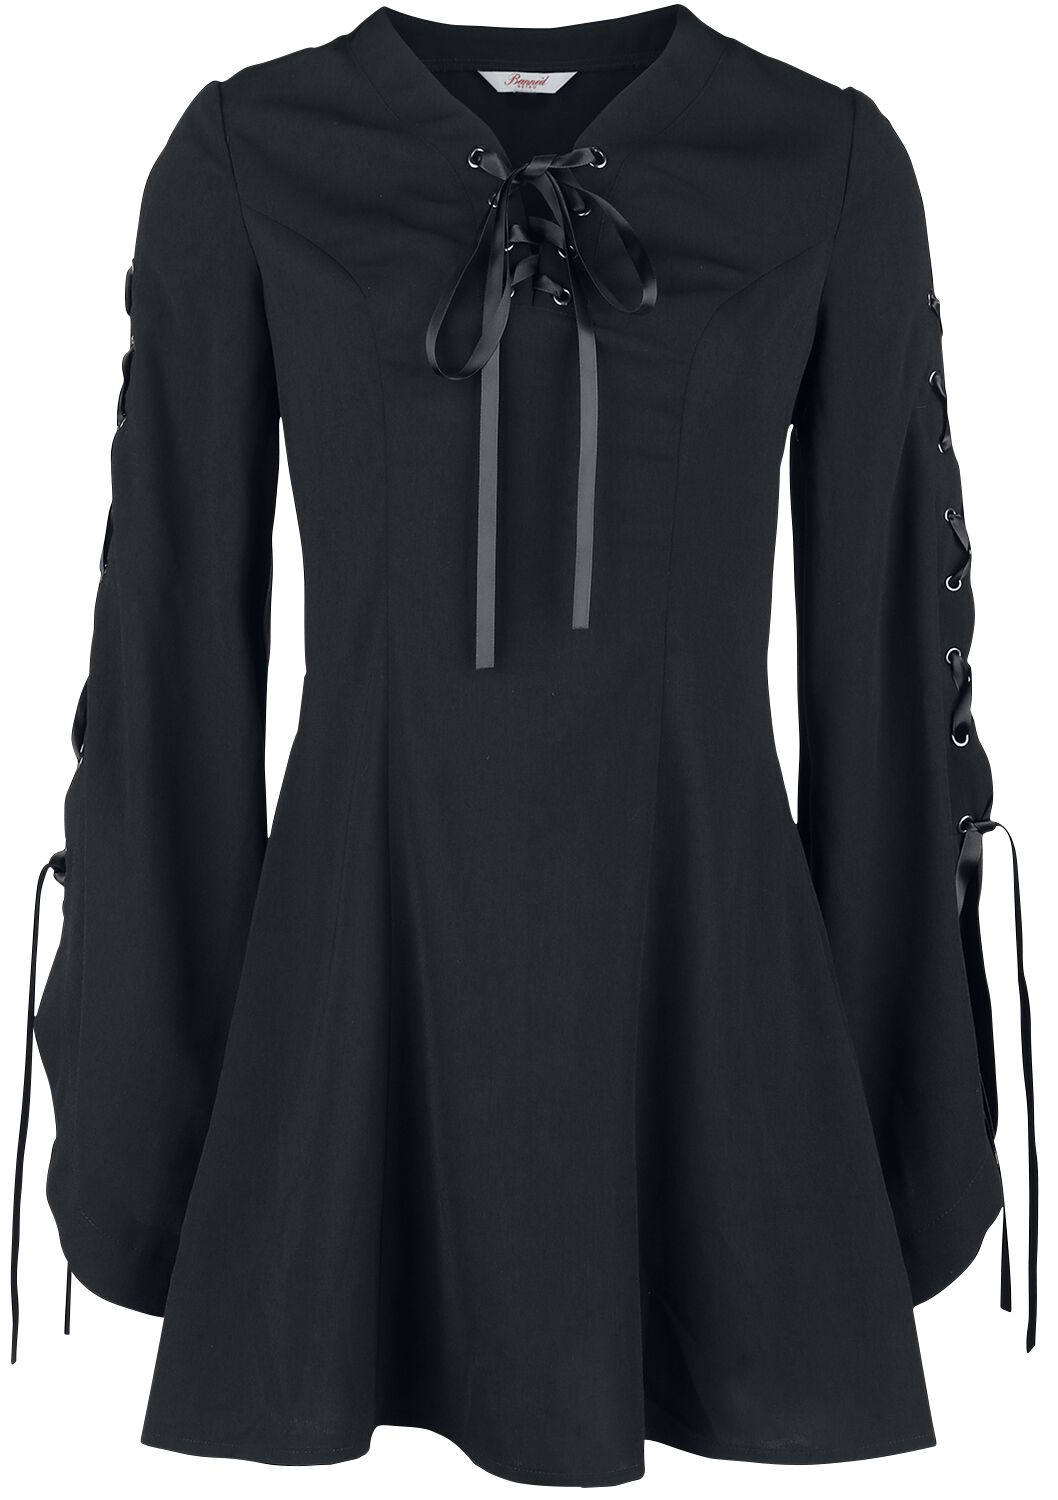 Banned Alternative - Gothic Kurzes Kleid - Jezebel Tie Dress - XS bis 4XL - für Damen - Größe XXL - schwarz